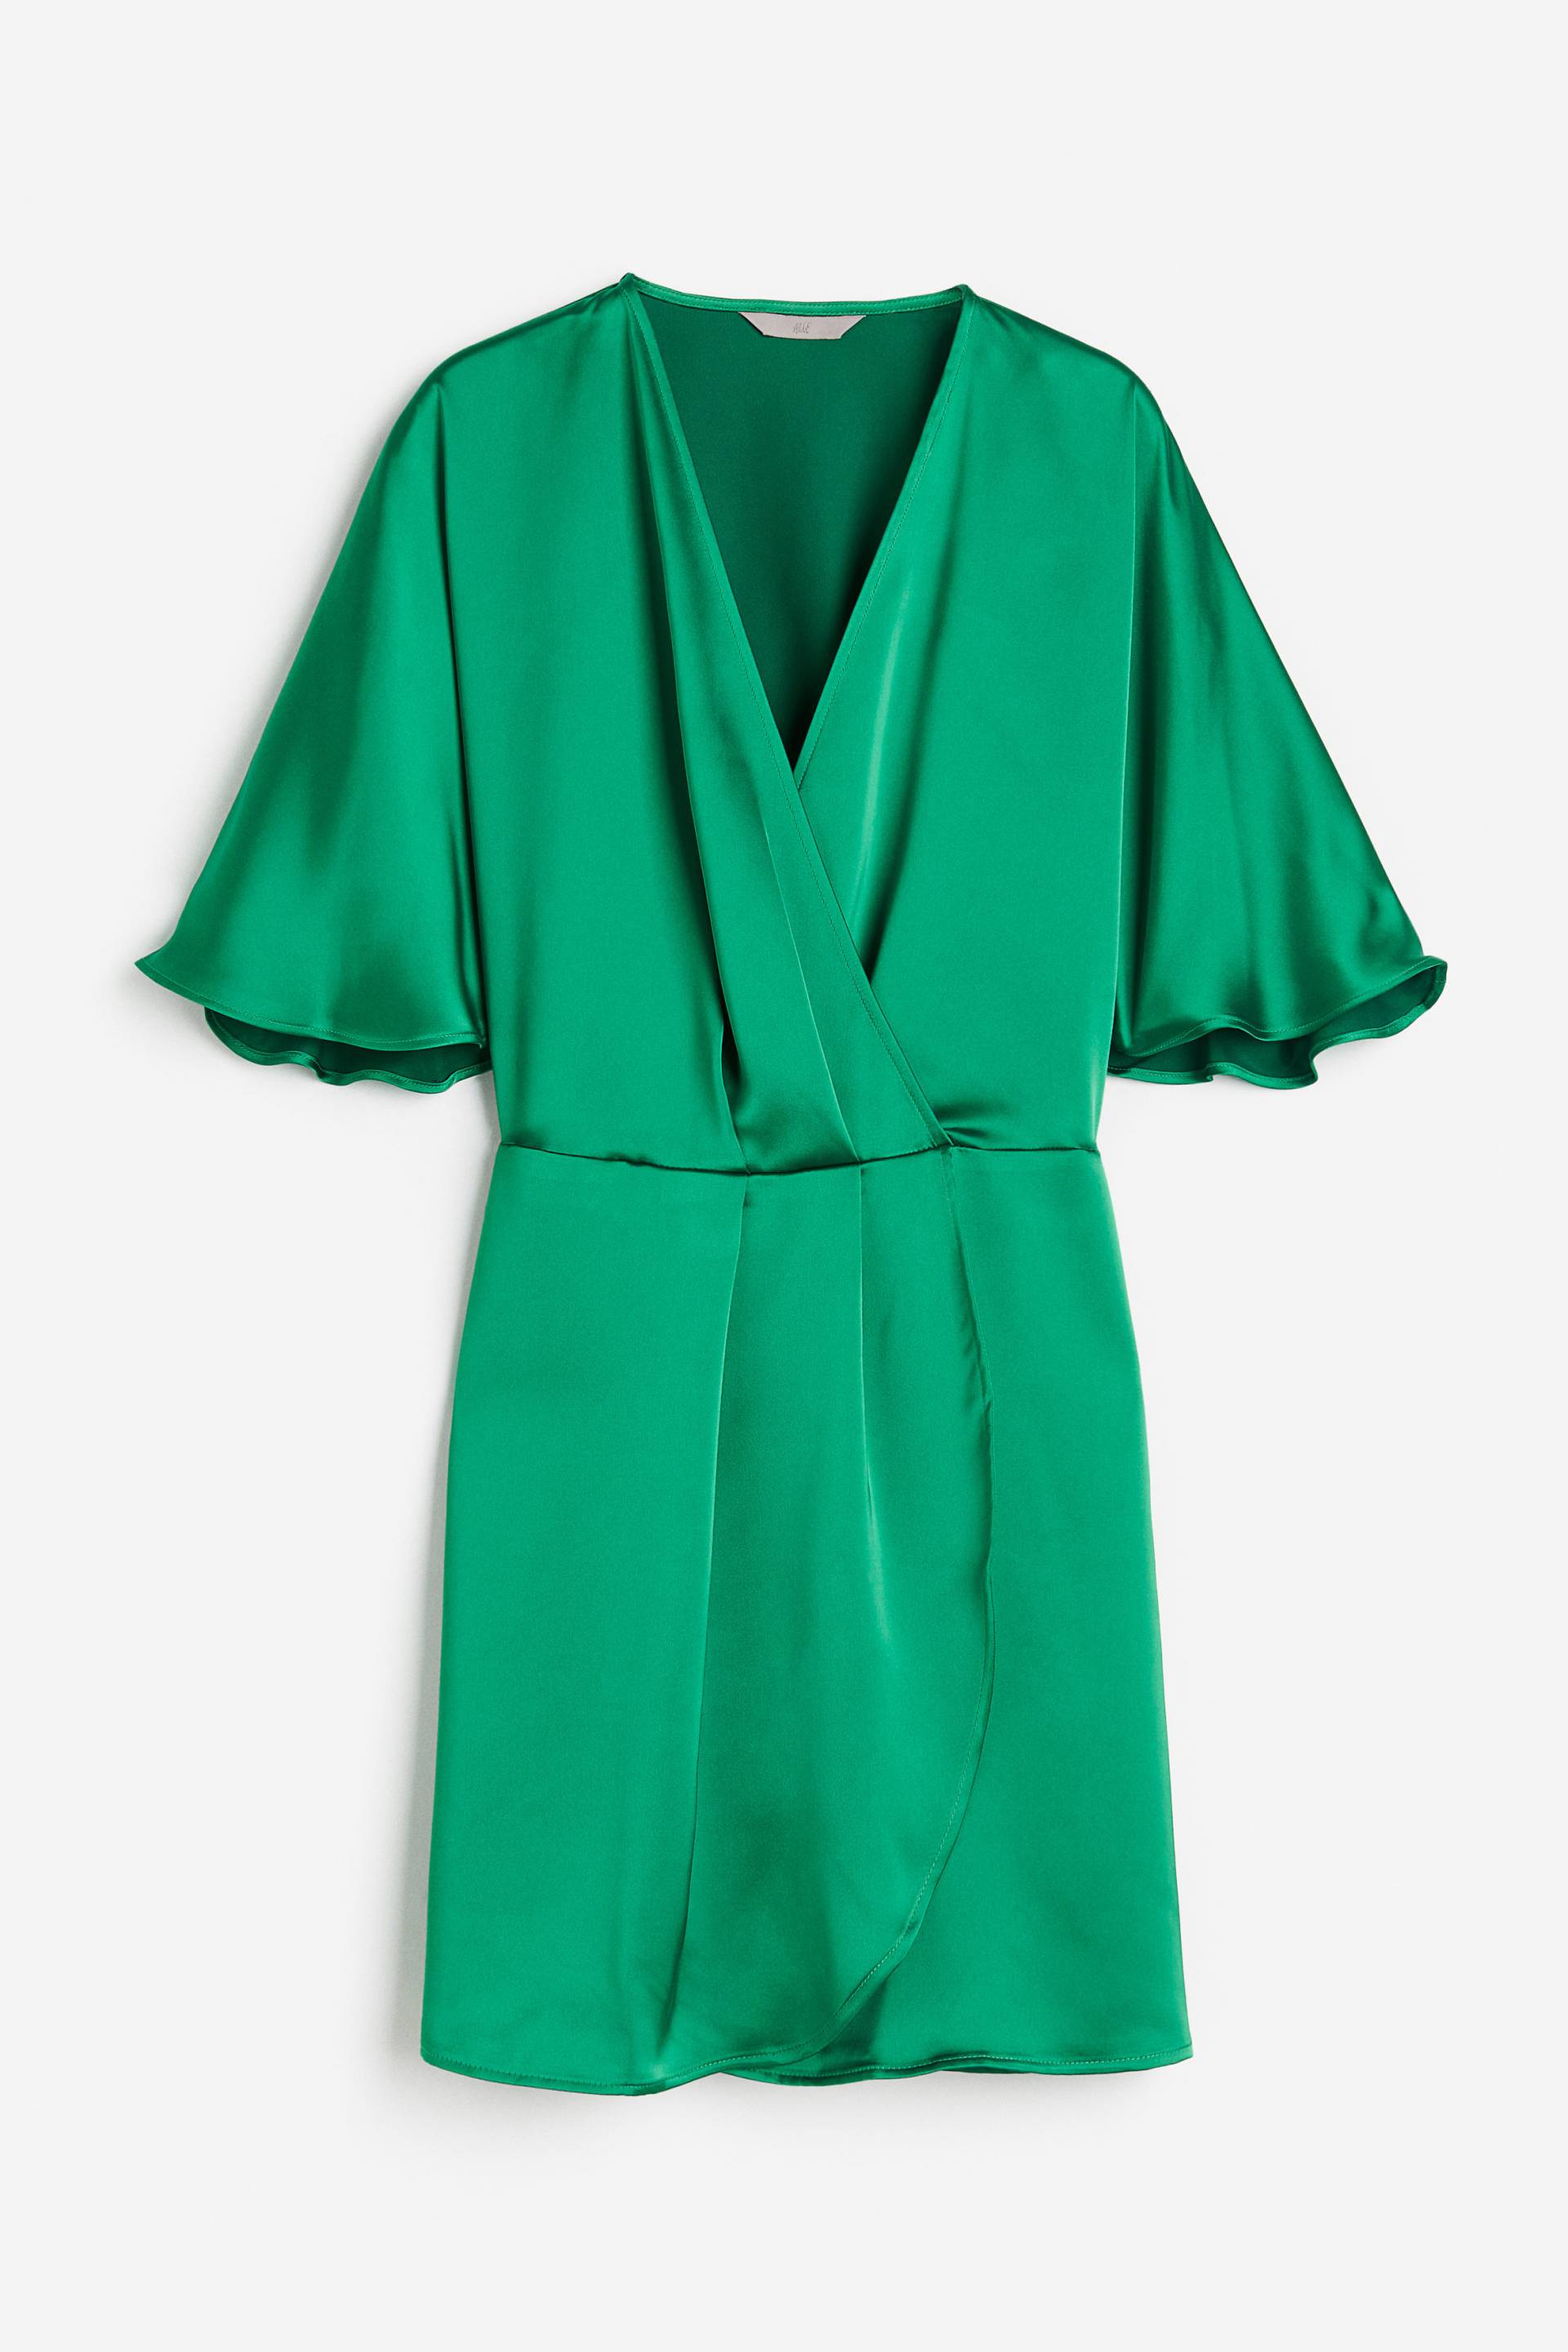 H&M Wickelkleid aus Satin Grün, Alltagskleider in Größe XL. Farbe: Green von H&M